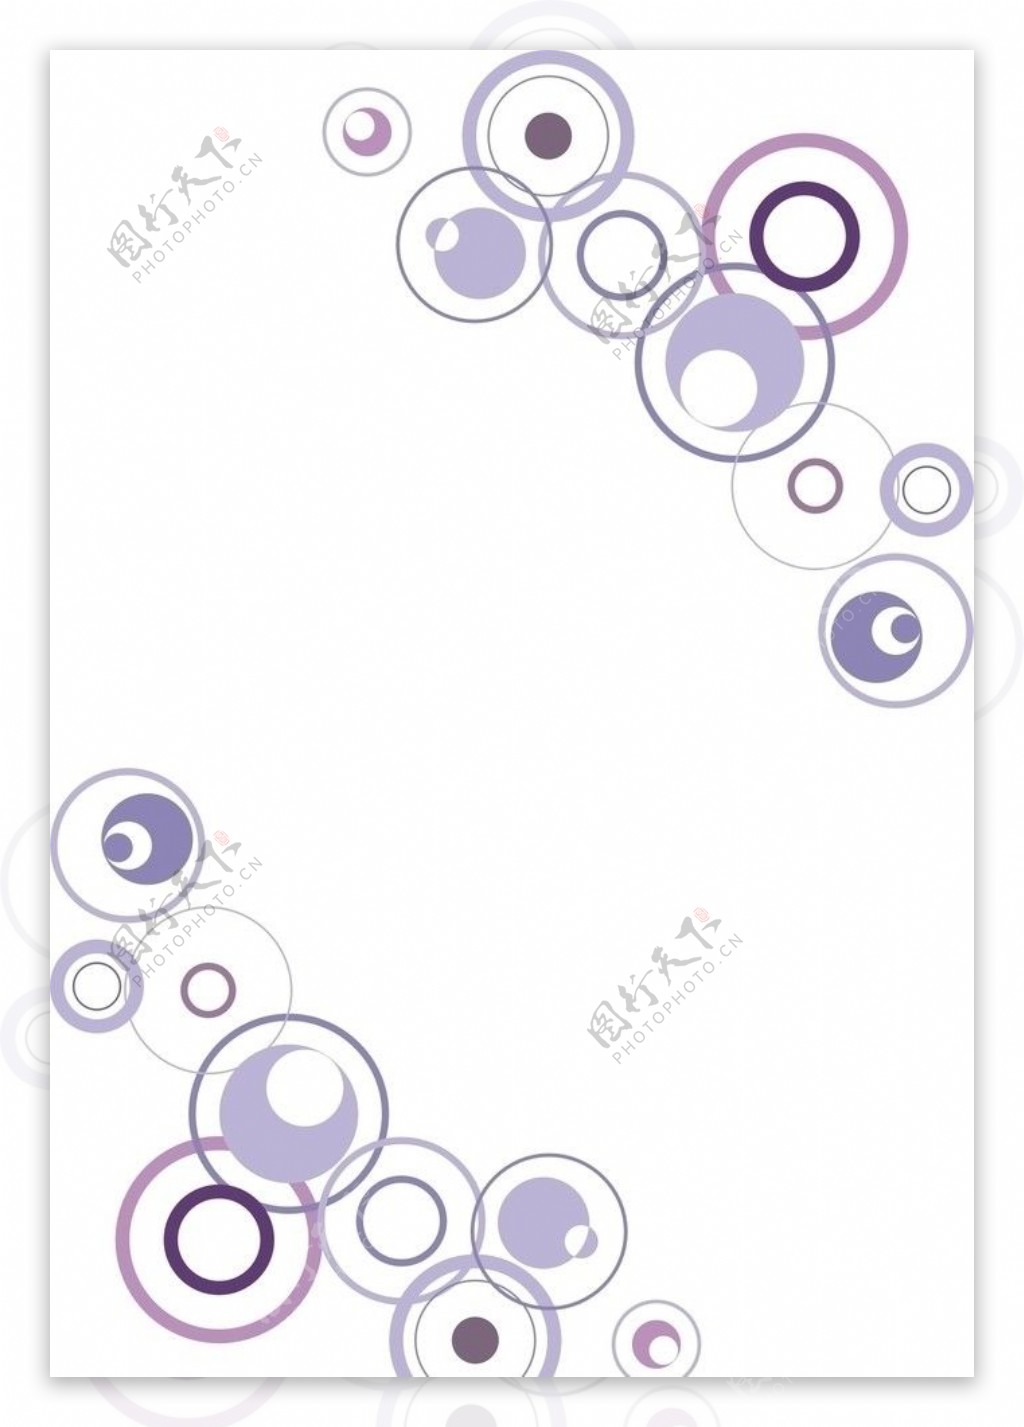 紫色圈圈图片